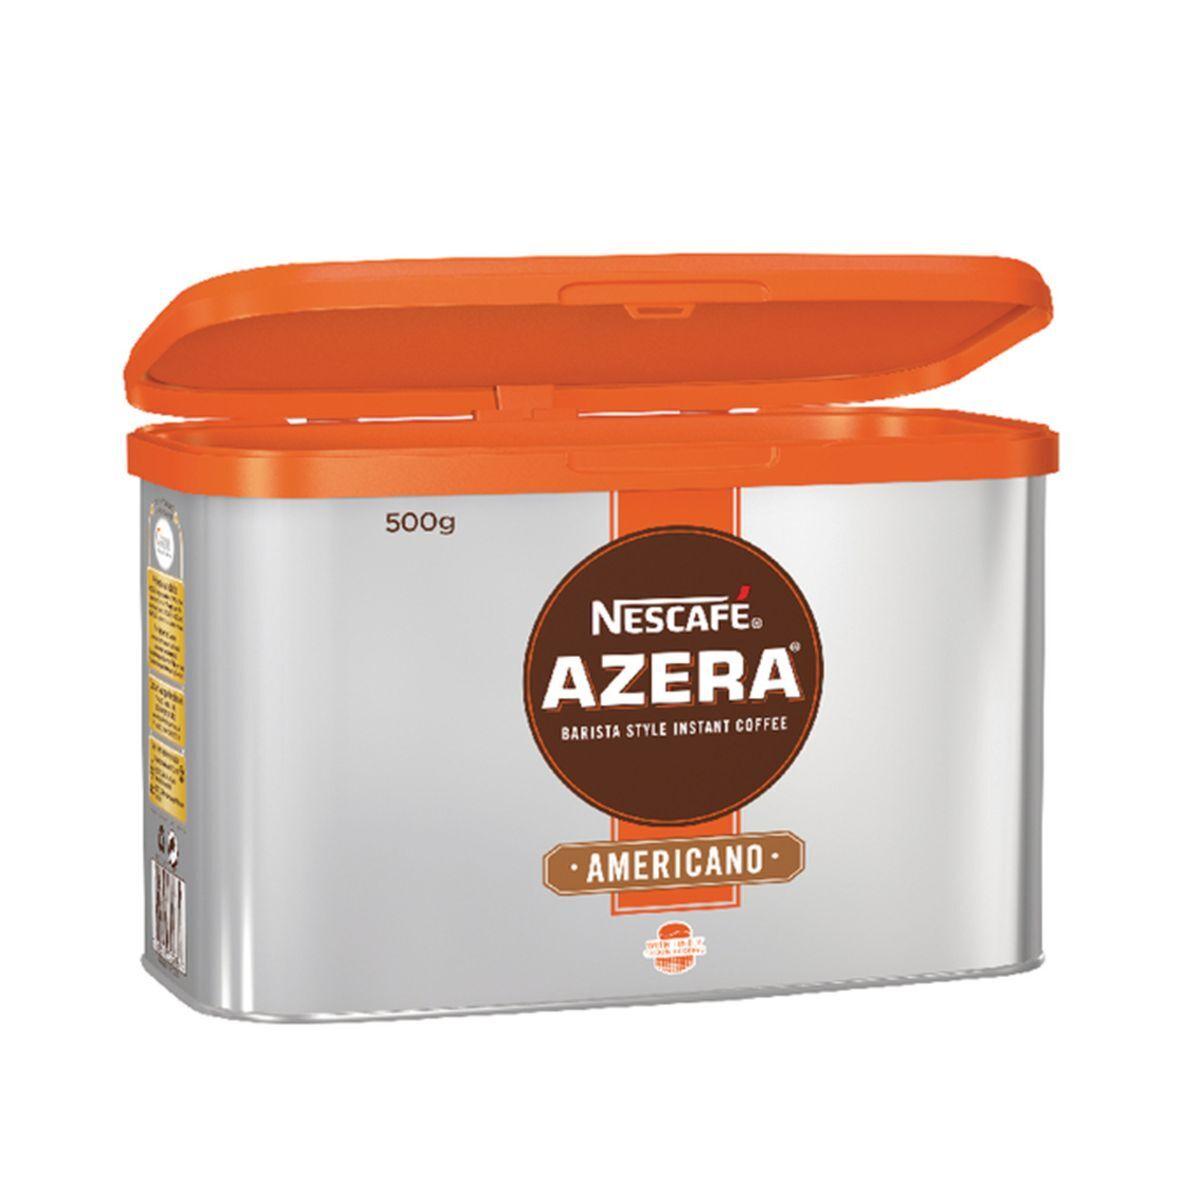 Nescafe Azera Americano: Coffee Tin 500g - Vending Superstore